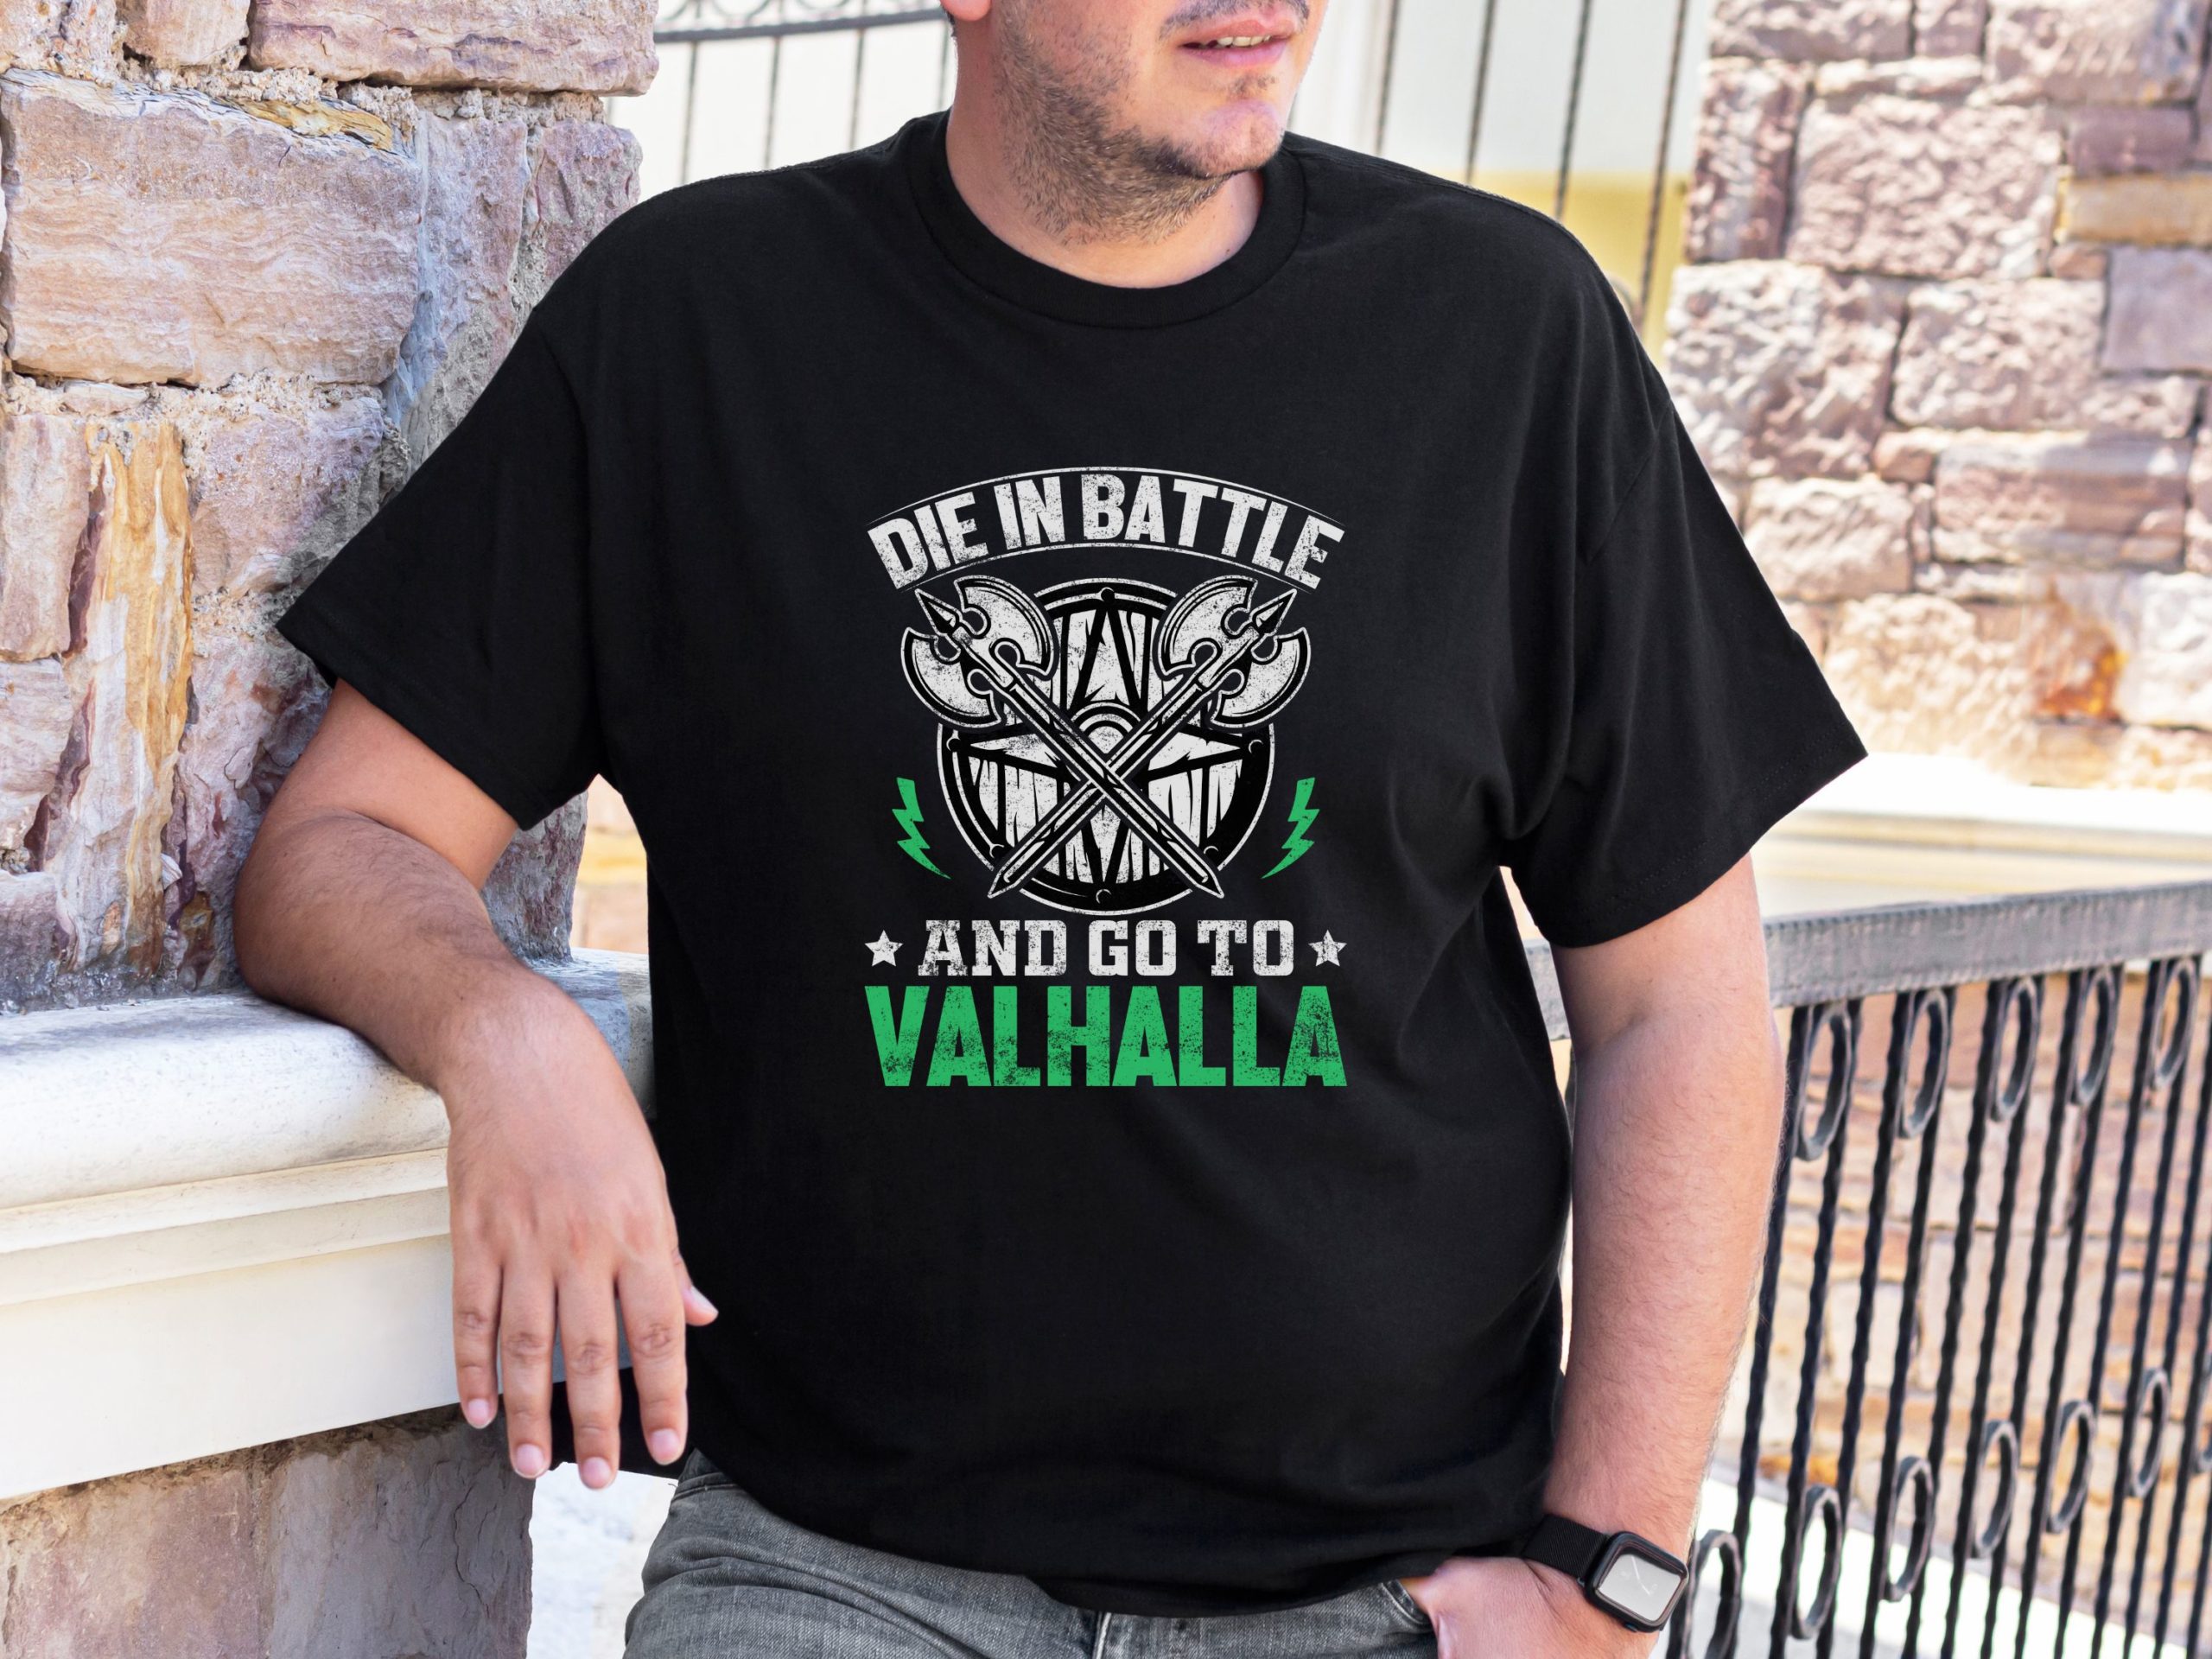 Die in battle and go to Valhalla, Viking shirt